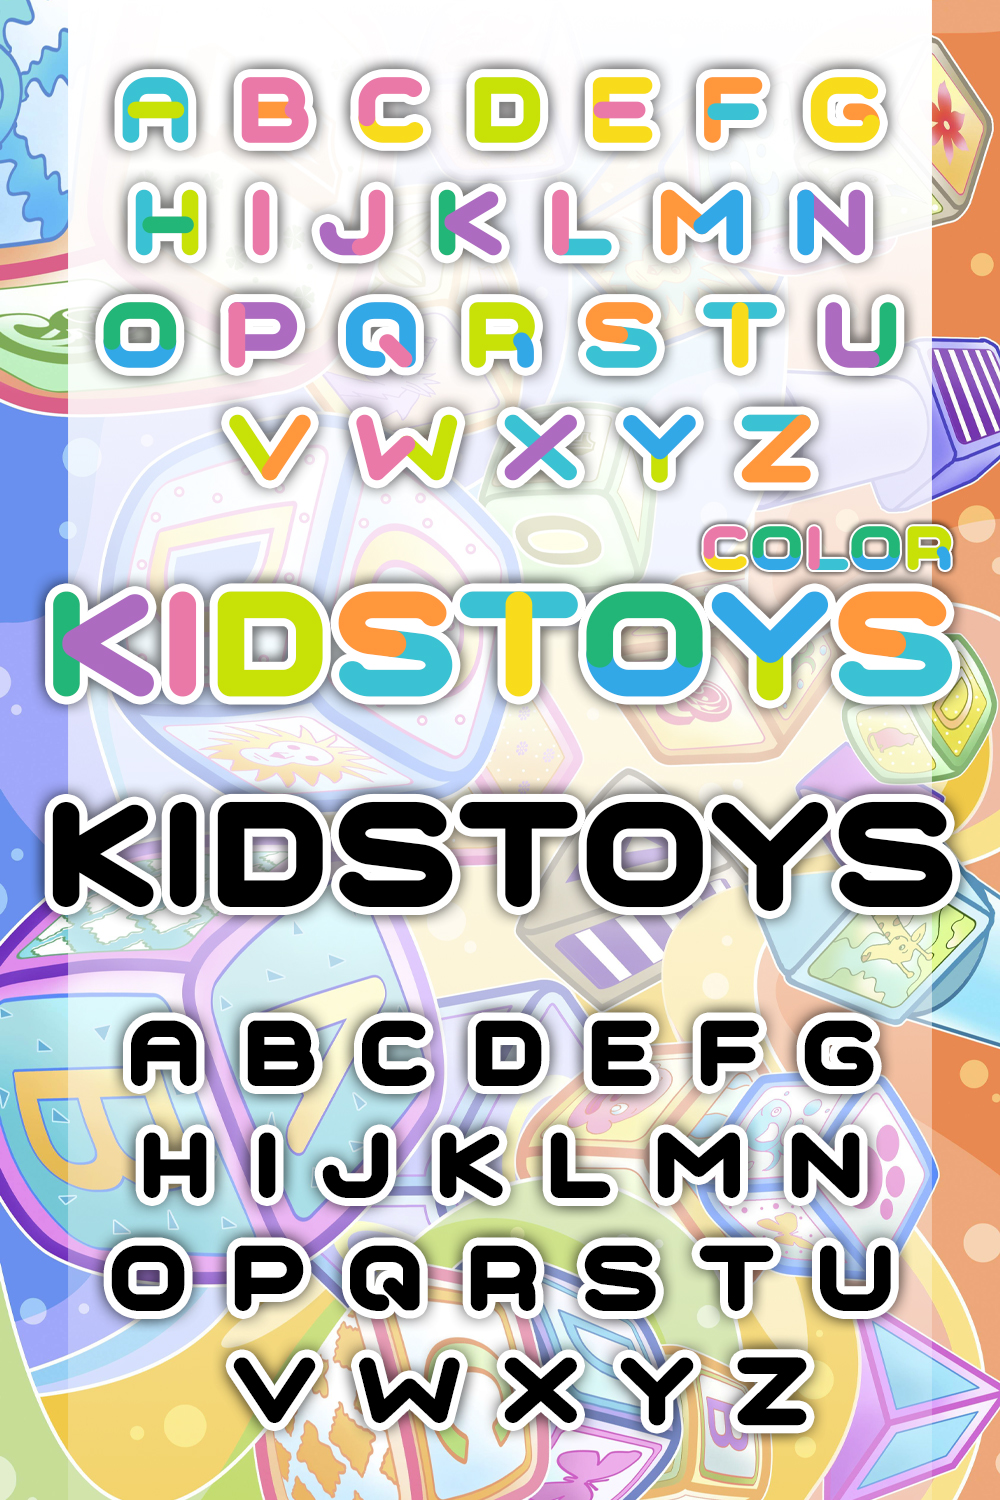 Kidstoys font of pinterest.